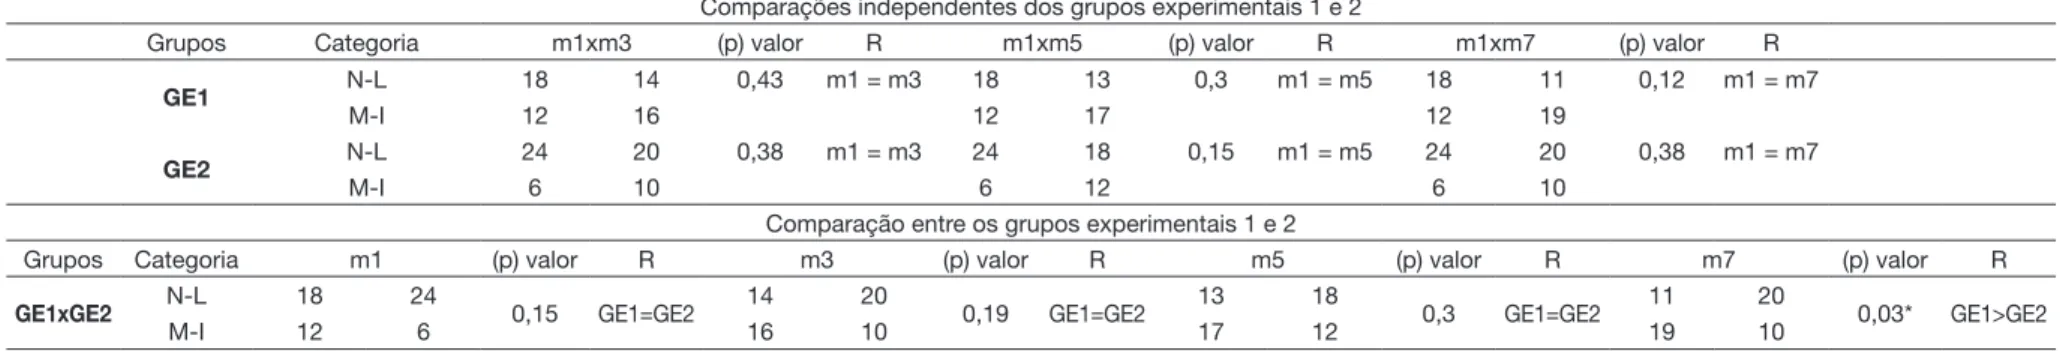 Tabela 4. Resultados da autopercepção na comparação independente dos grupos e na comparação entre os grupos experimentais 1 e 2 Comparações independentes dos grupos experimentais 1 e 2